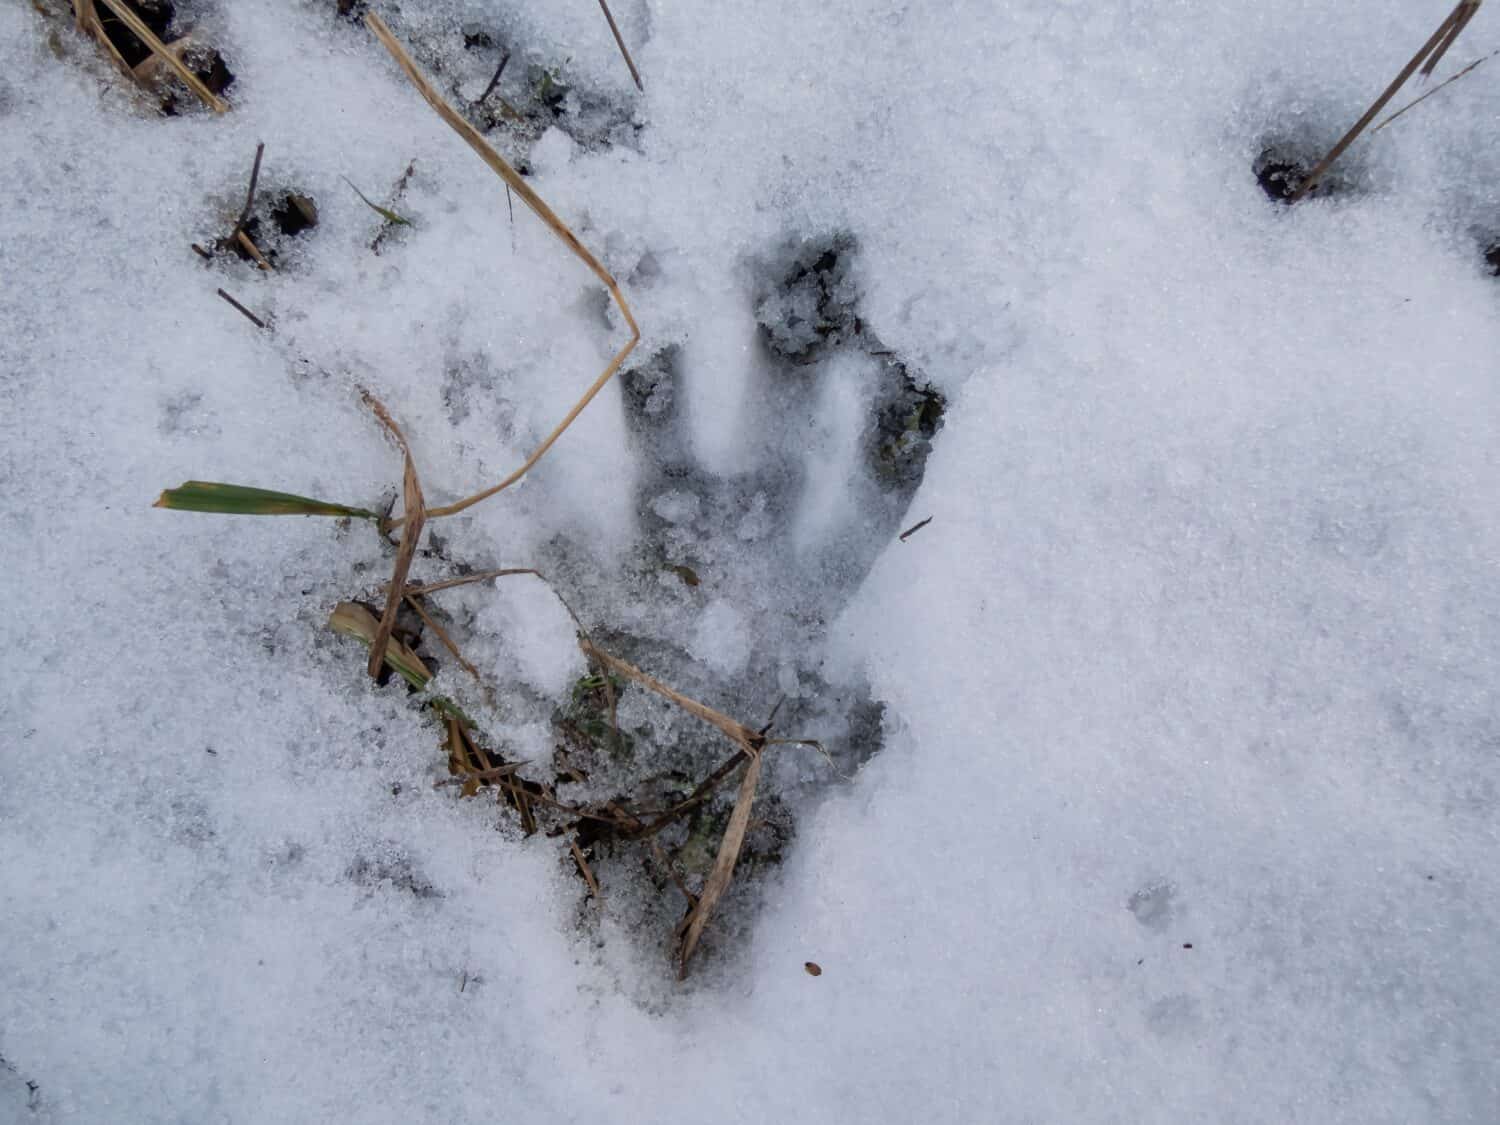 Un'impronta del castoro euroasiatico o del castoro europeo (fibra di ricino) che cammina nella neve fresca